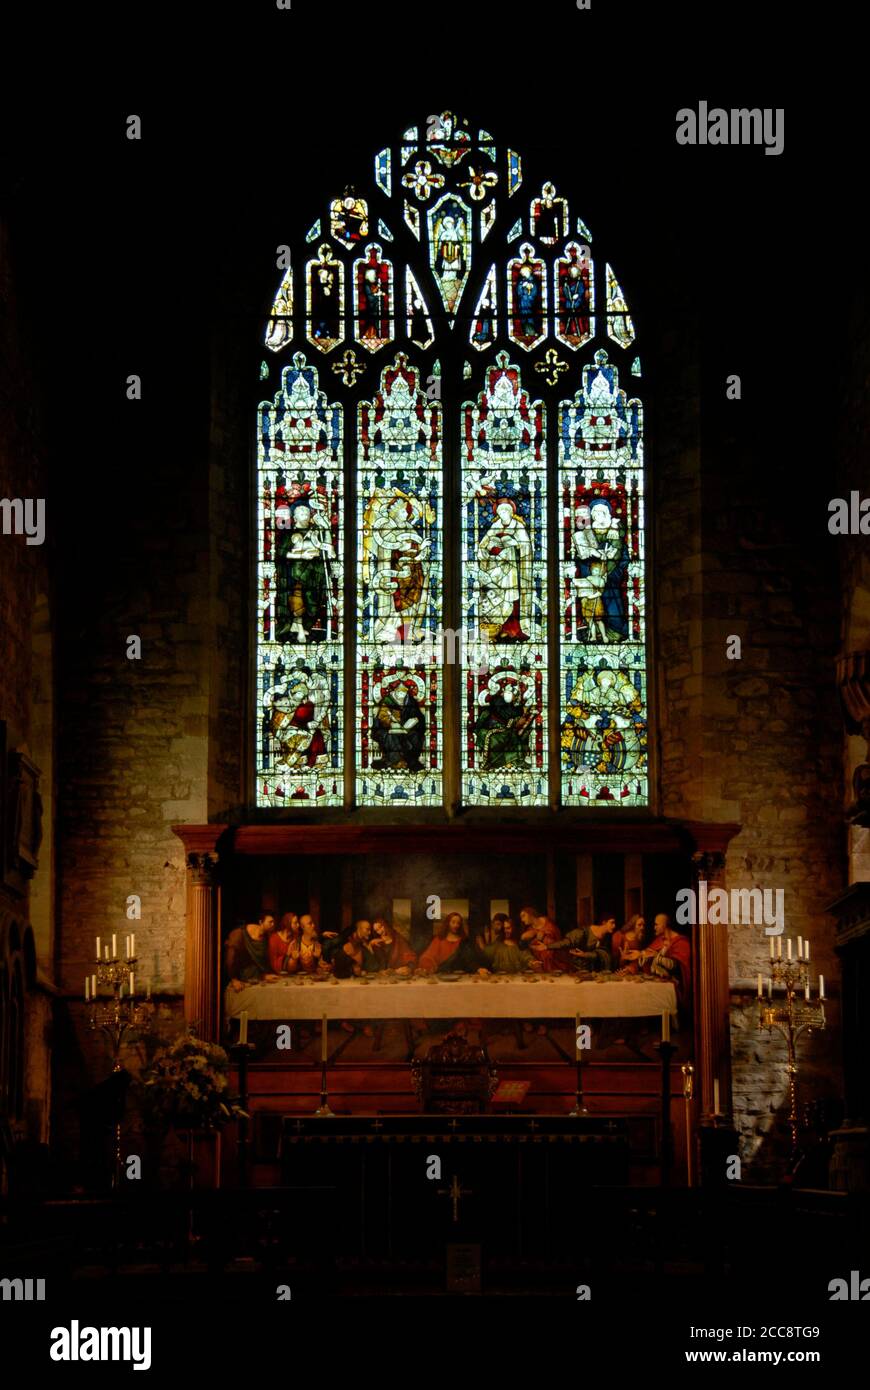 Vitraux et tableau de la Cène dans l'église paroissiale de Saint-Michel et de tous les Anges, Ledbury, Herefordshire, Angleterre Banque D'Images